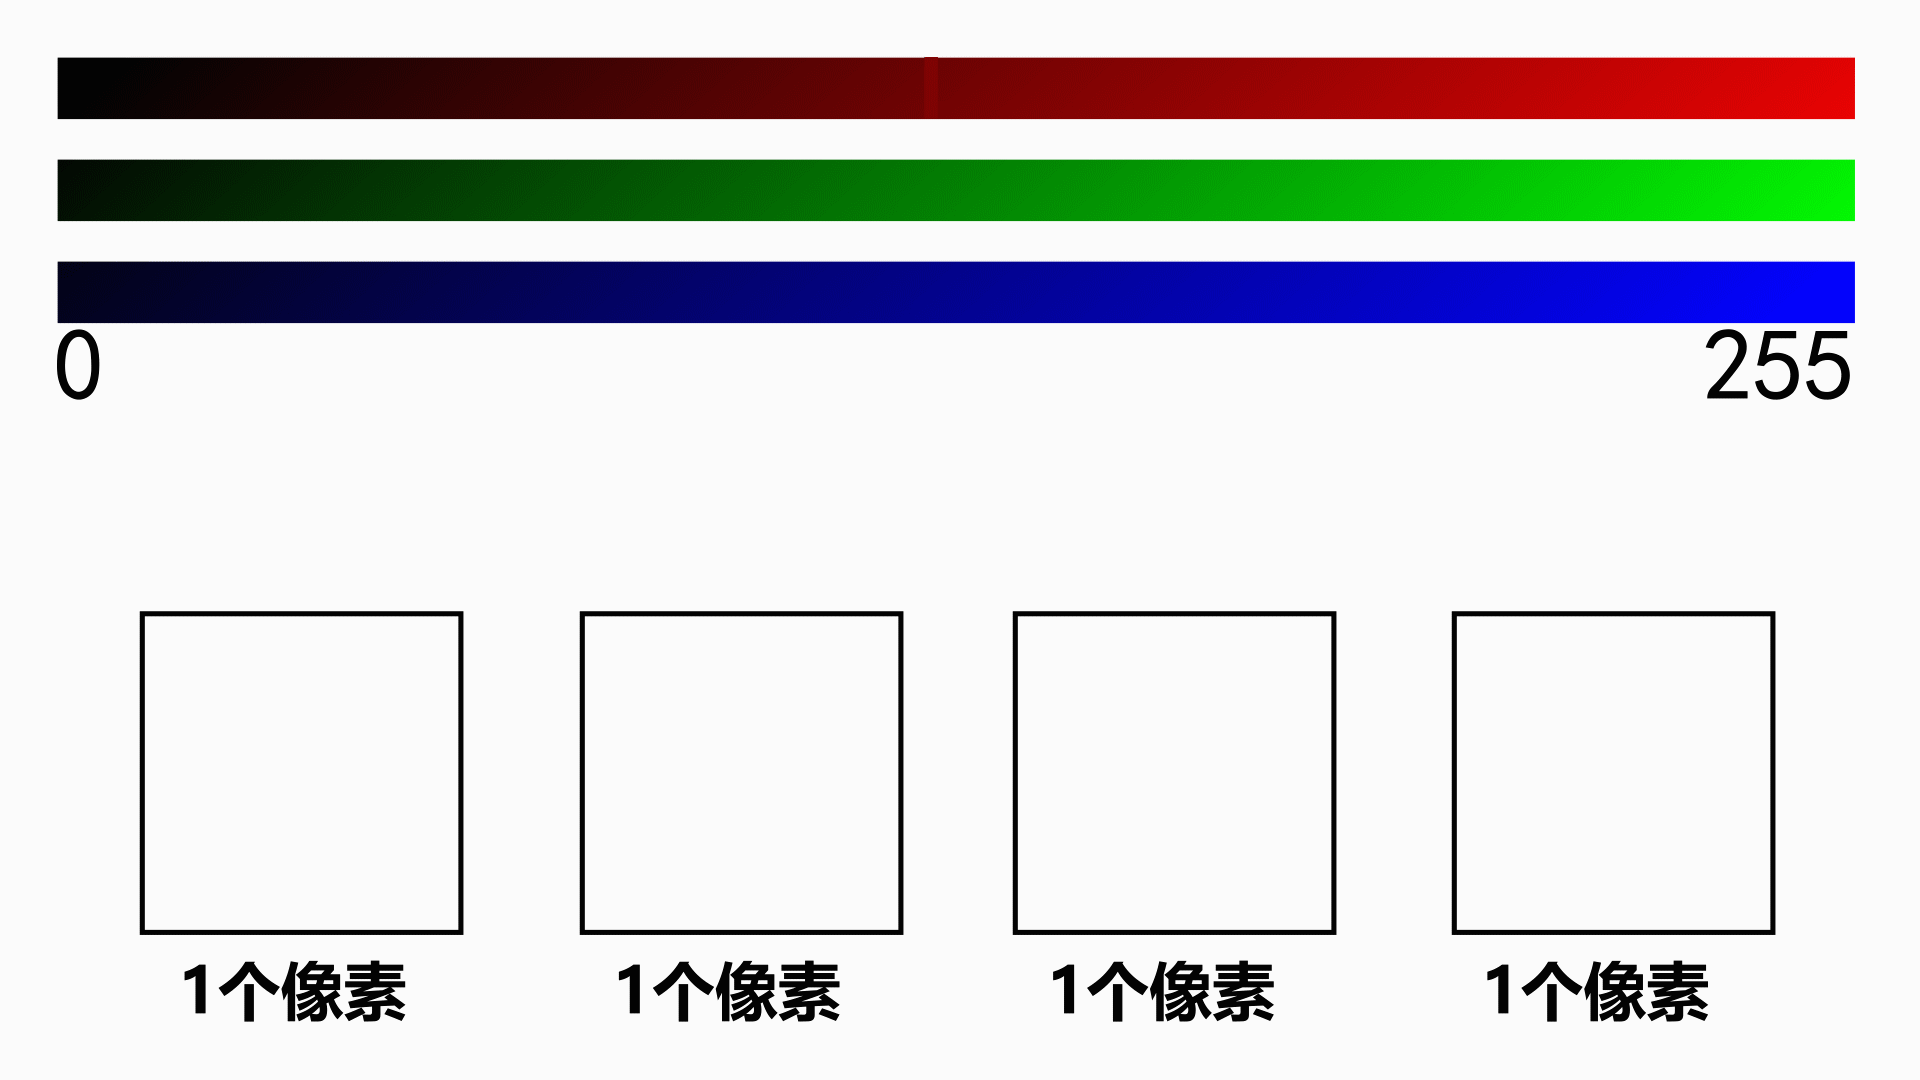 不同分量值的rgb混合各种颜色示意图